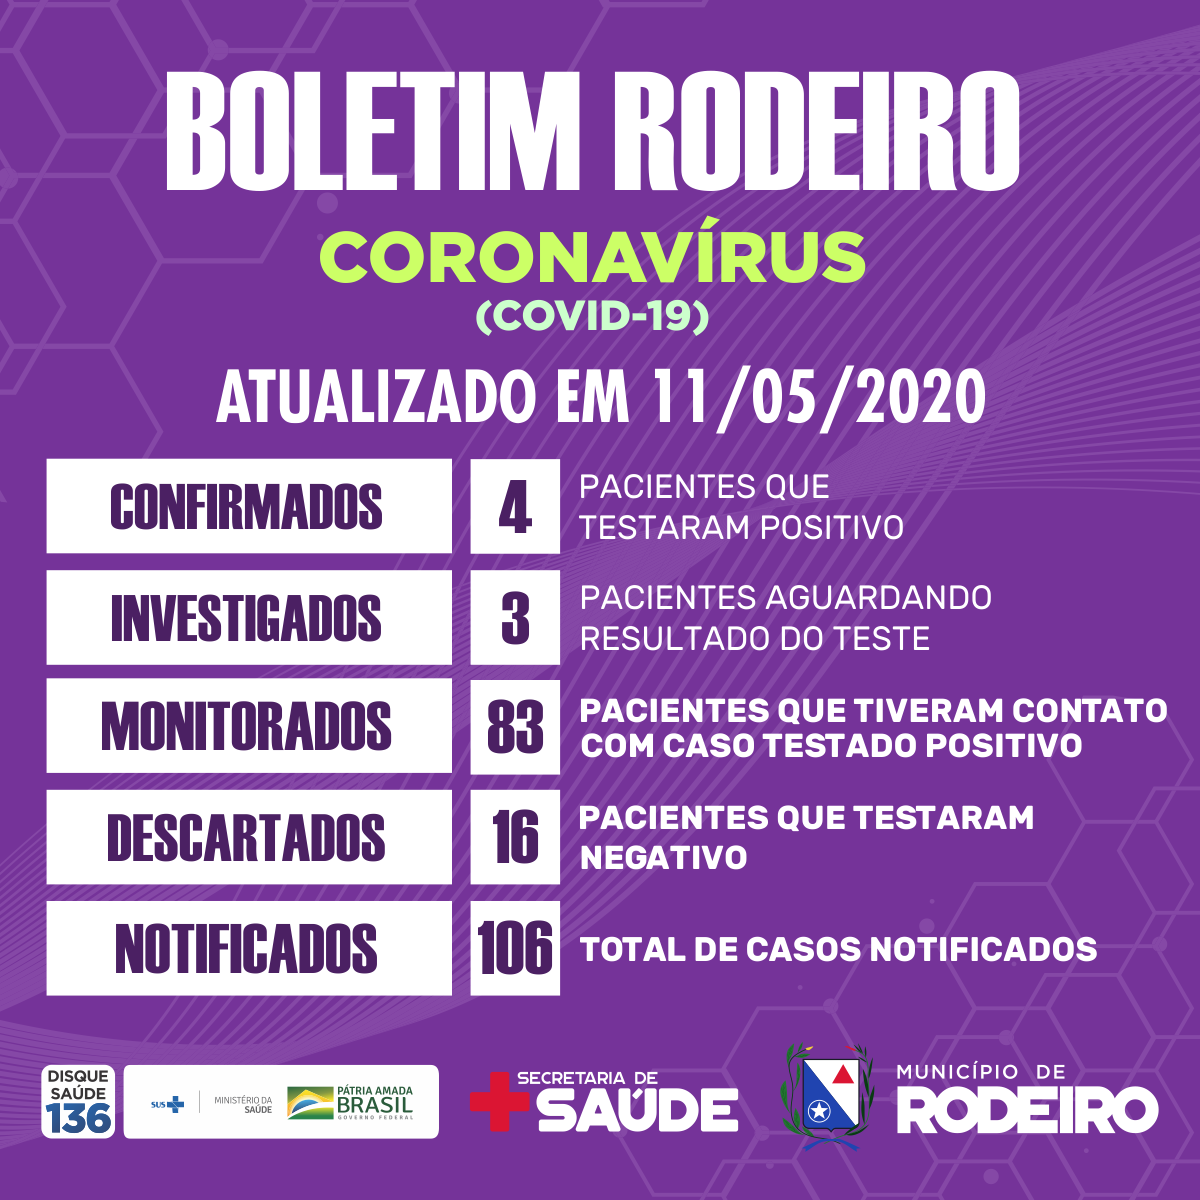 Boletim epidemiológico do Município de Rodeiro coronavírus, atualizado em 11/05/2020